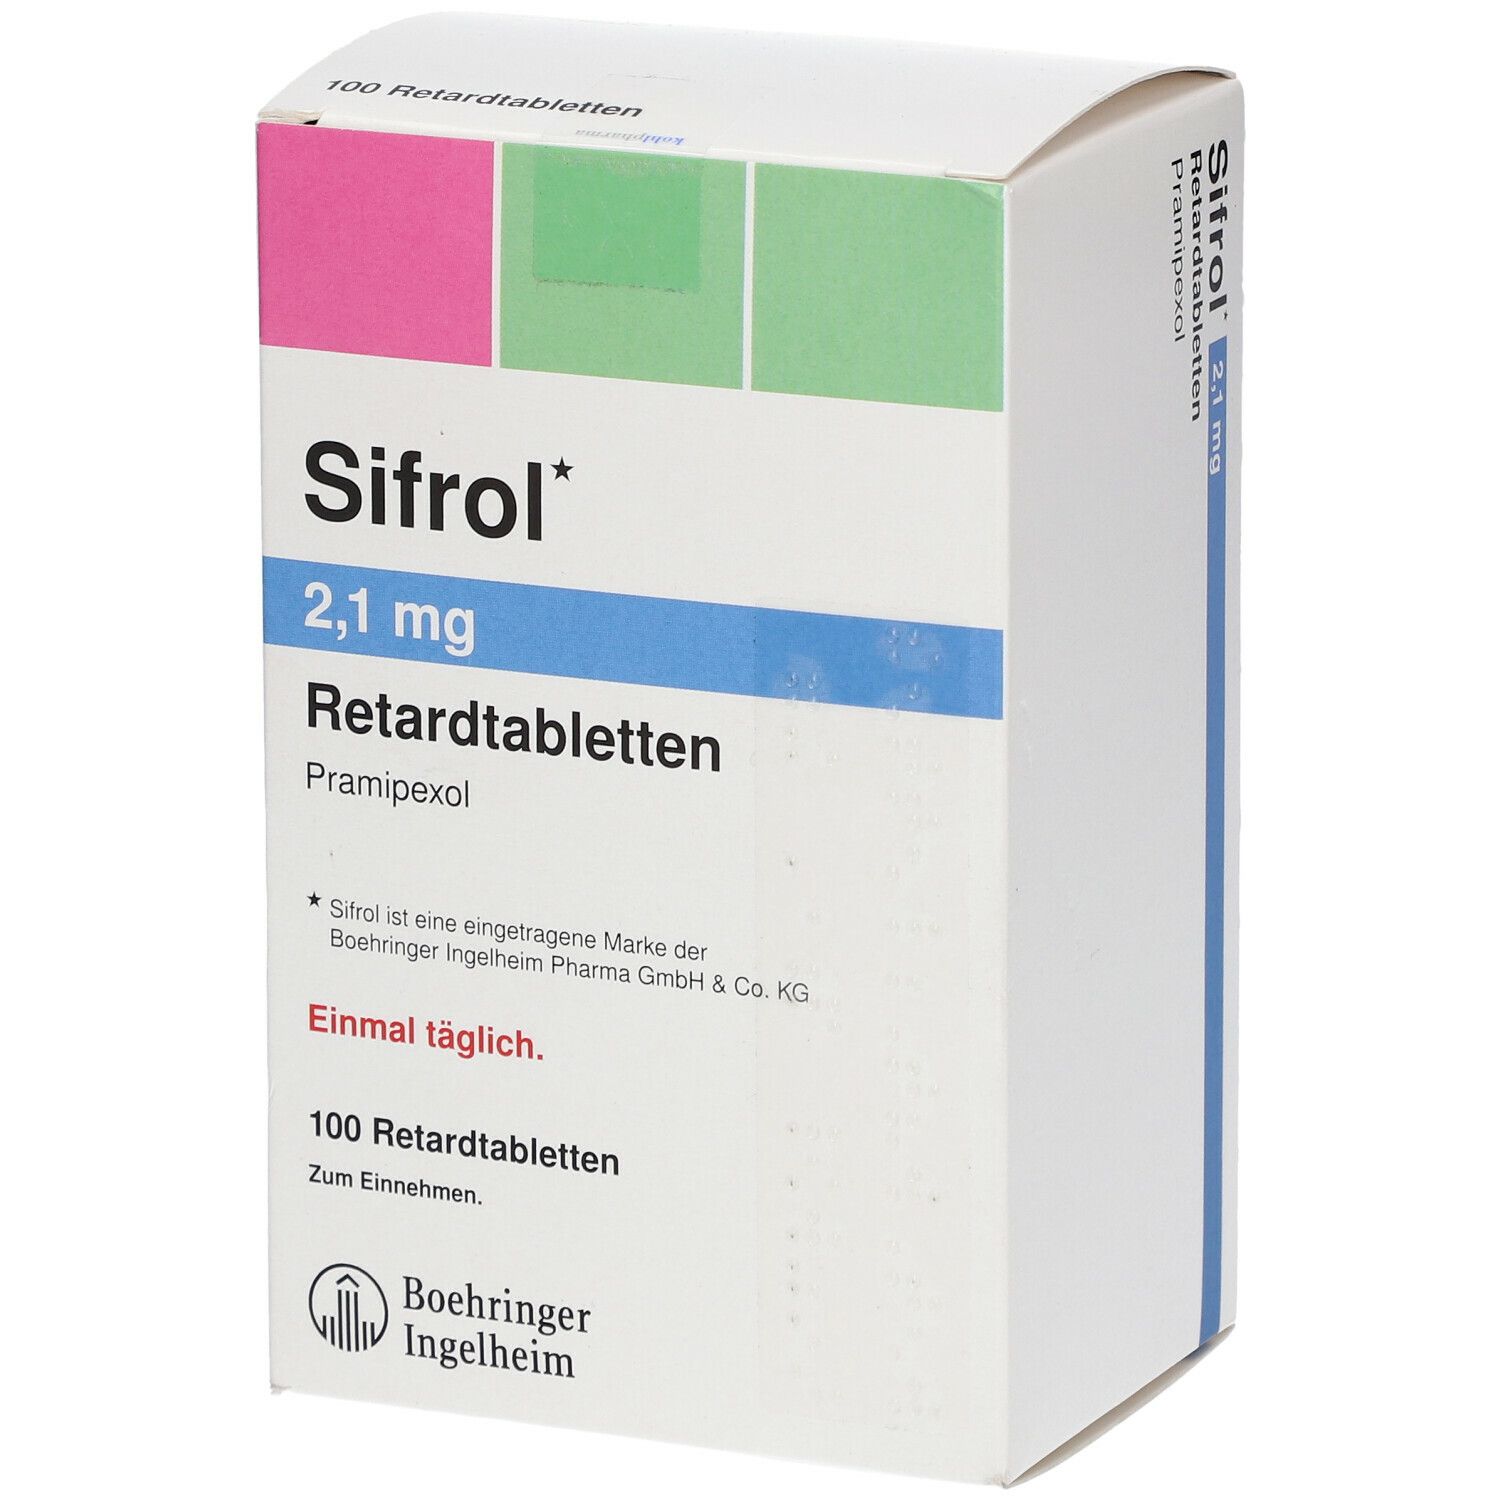 Sifrol 2,1 mg Retard 100 St mit dem E-Rezept kaufen - SHOP APOTHEKE